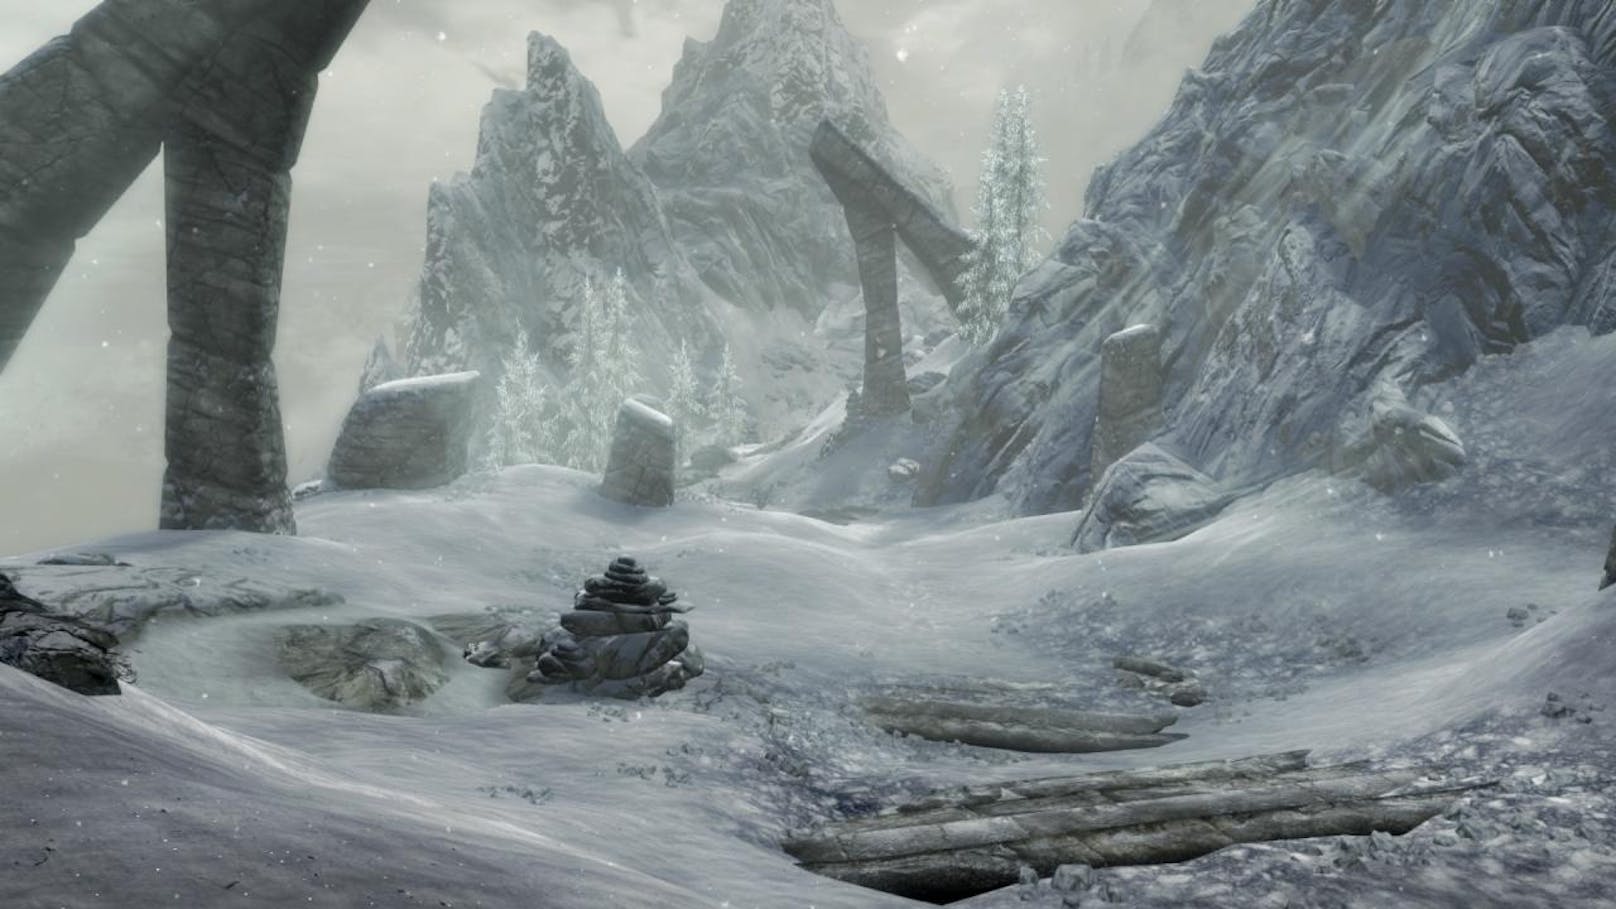 Während die Story von Skyrim kaum ein Fantasy-Klischee auslässt, präsentierte sich schon das Original mit beeindruckendem Gameplay, durchdachten Schauplätzen und politischen Verstrickungen sowie auf den Spieler reagierenden Charakteren.